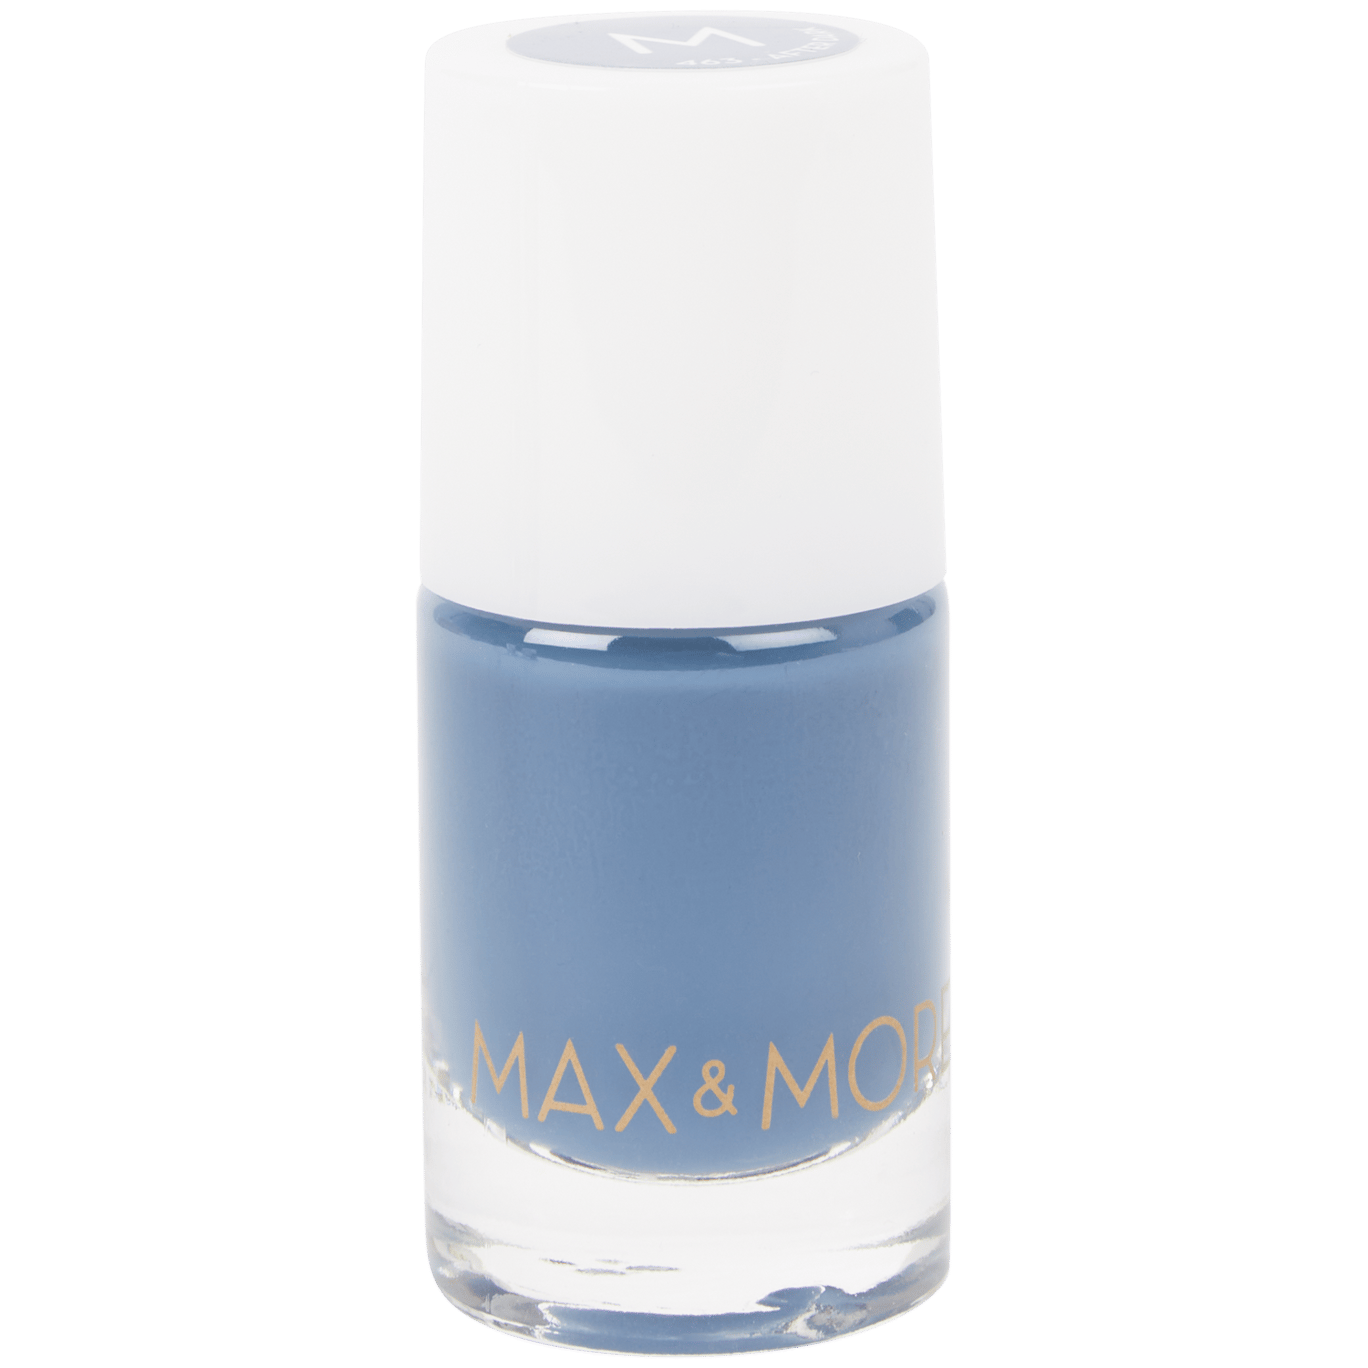 Esmalte de uñas Max & More